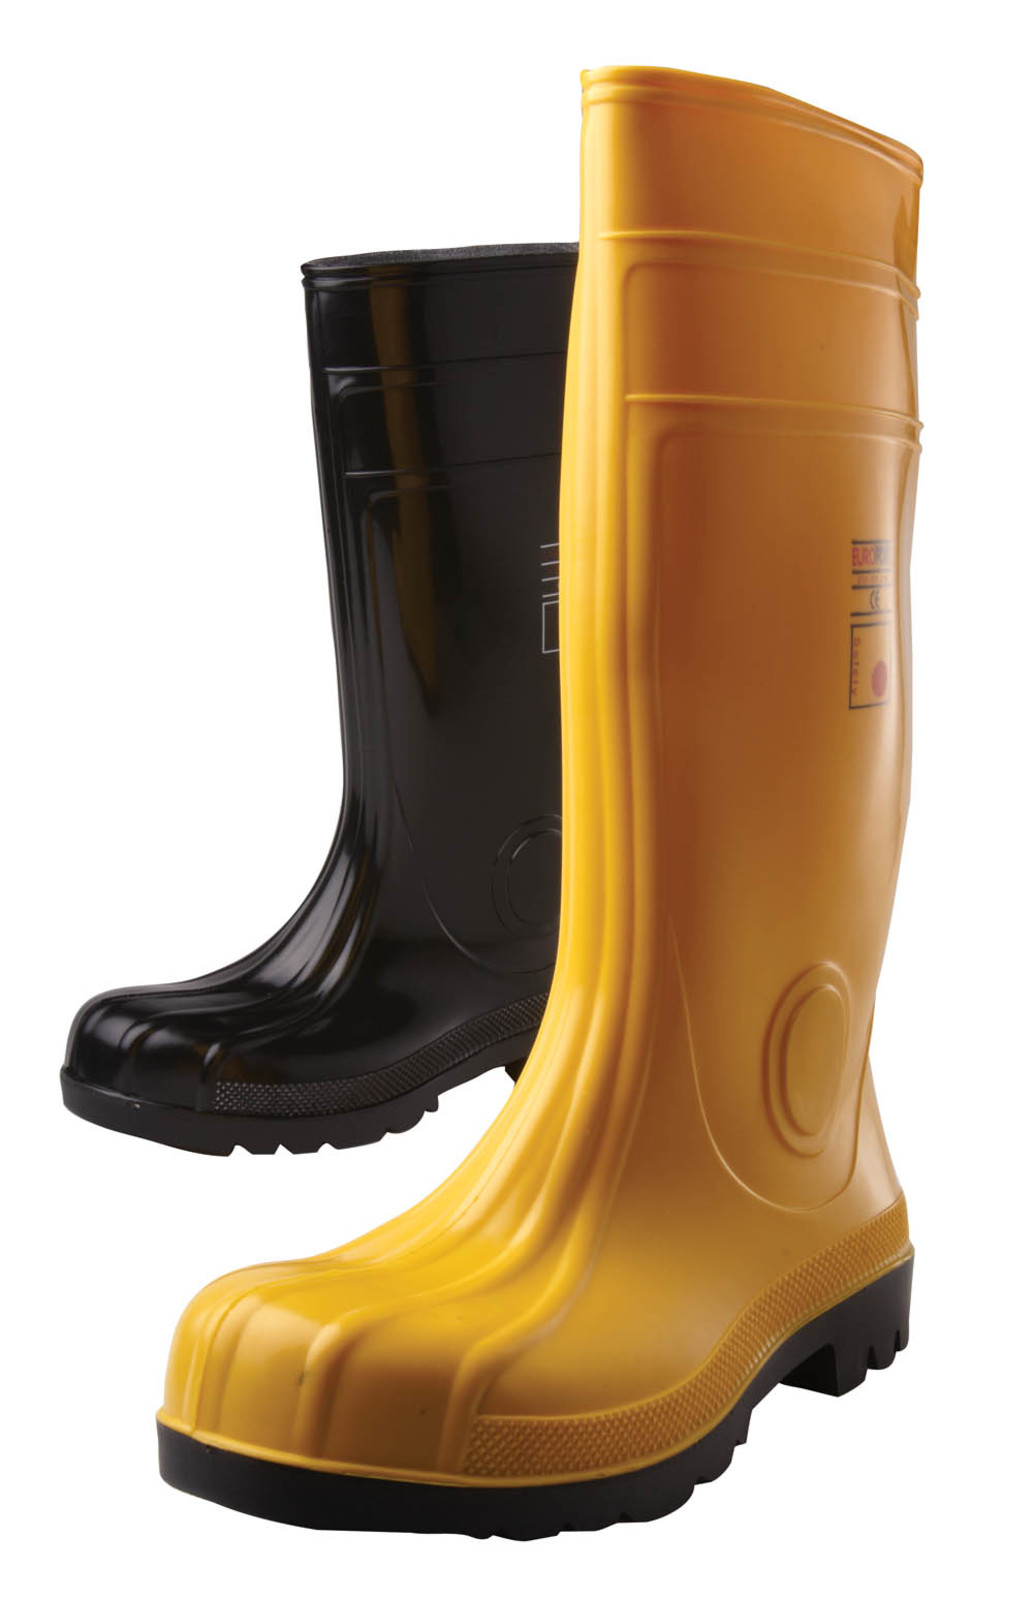 Gumáky Boots Eurofort  S5 - veľkosť: 42, farba: žltá